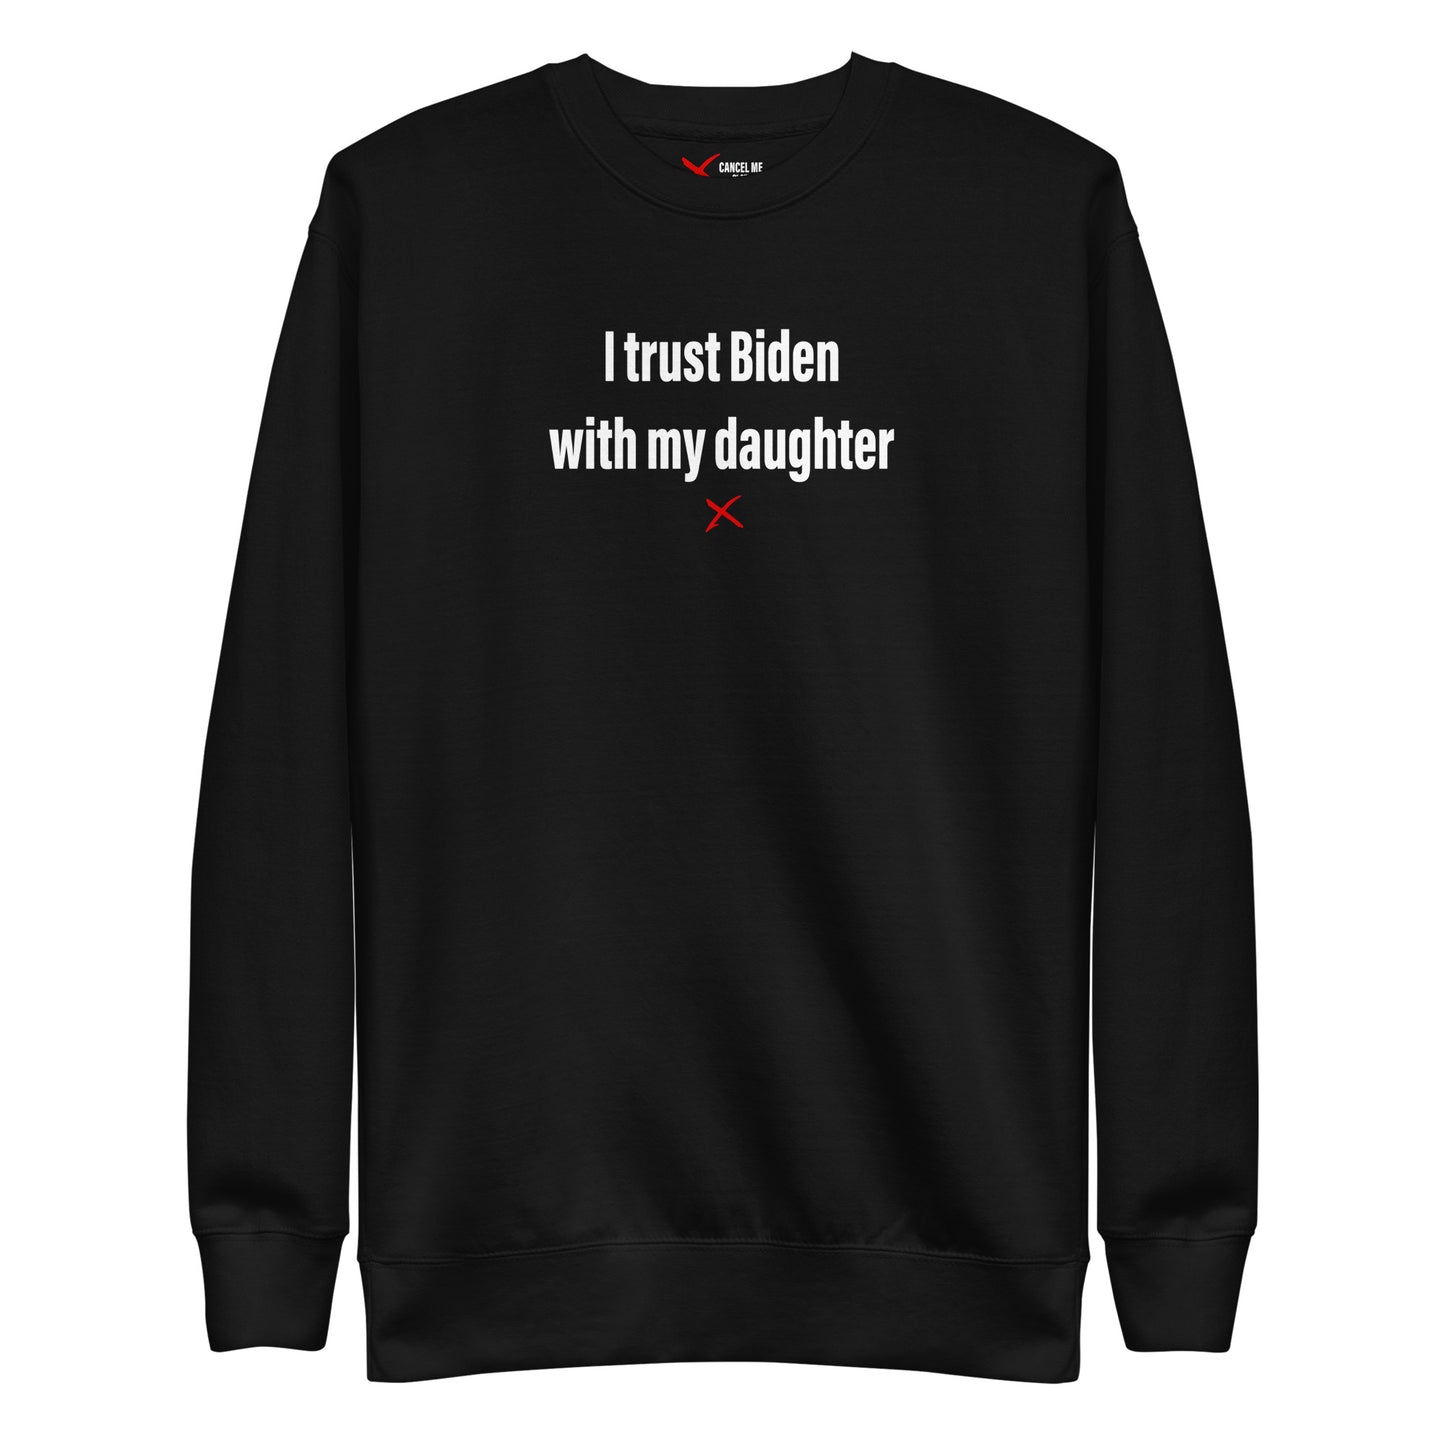 I trust Biden with my daughter - Sweatshirt